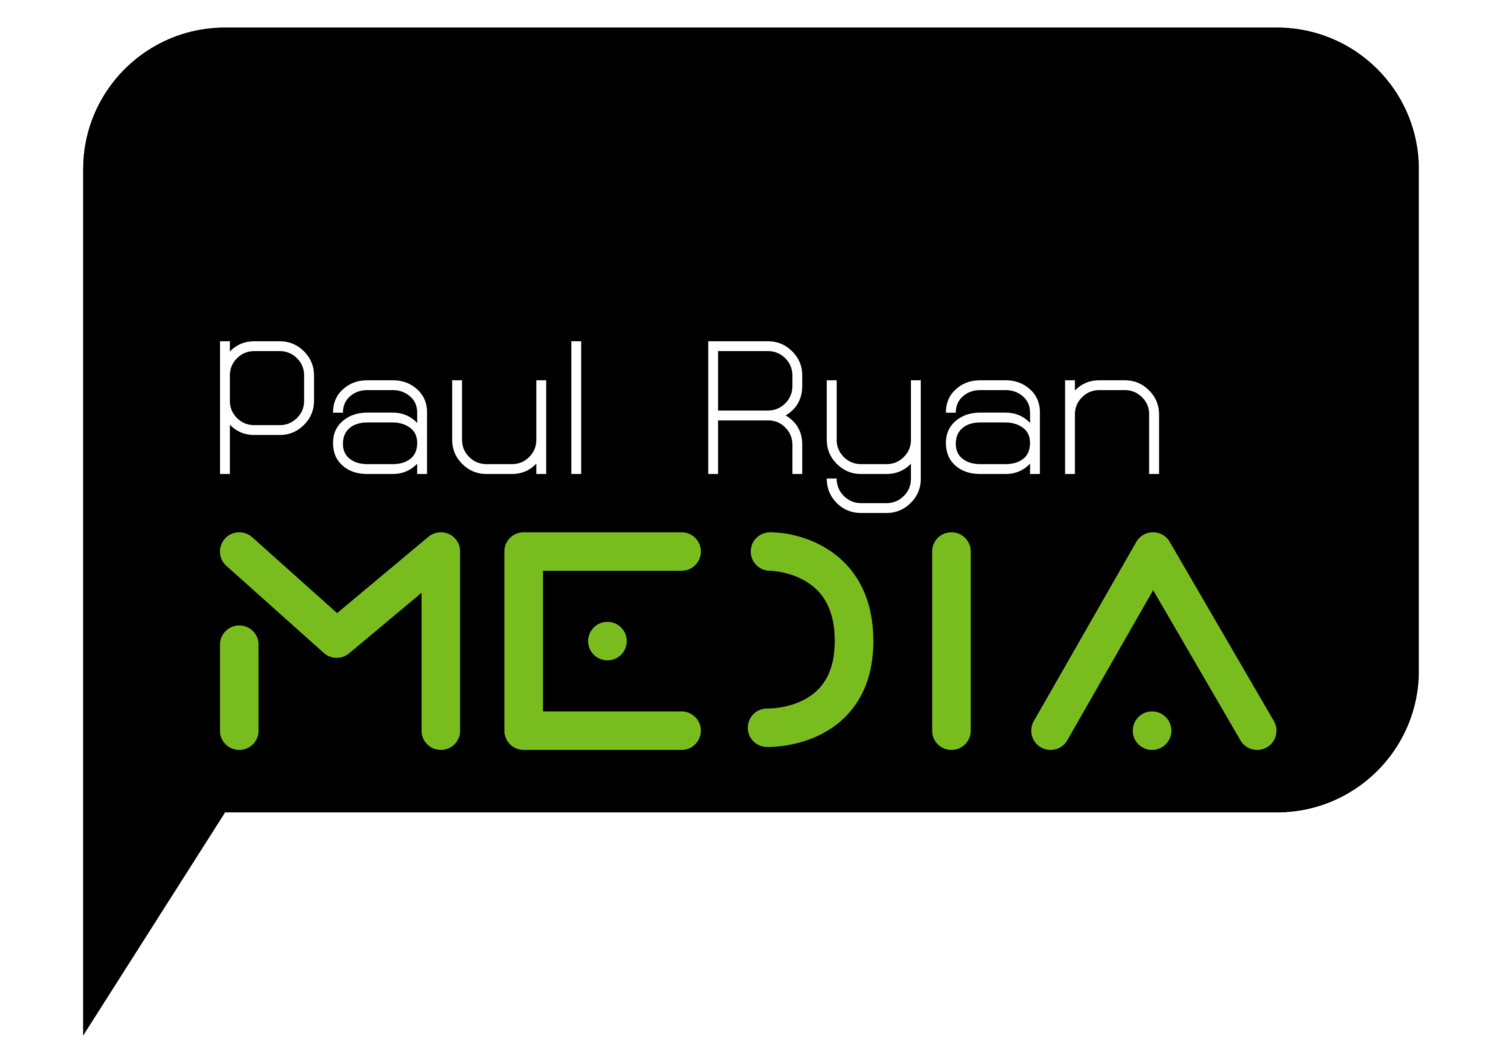 Paul Ryan Media